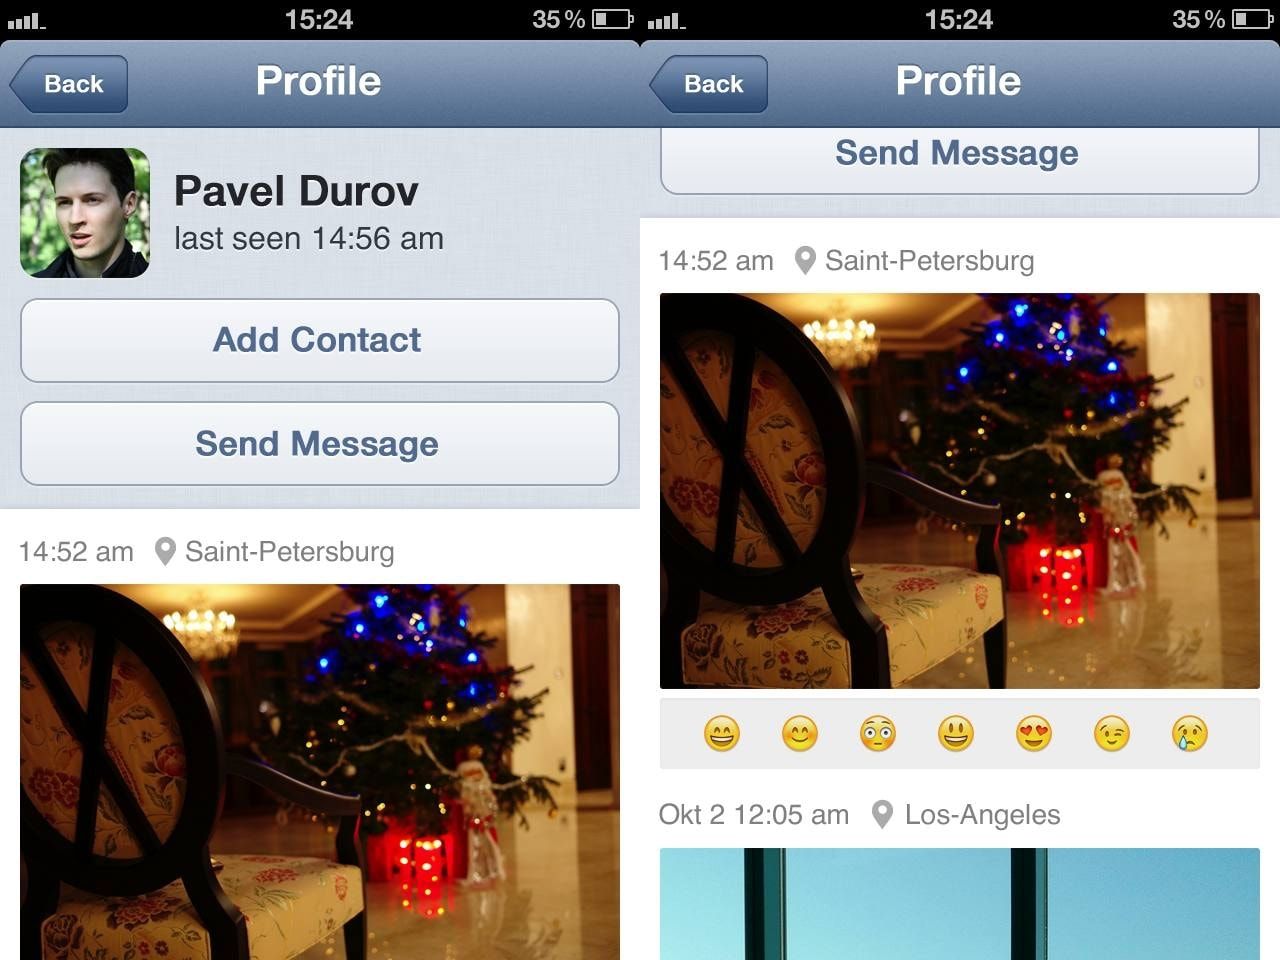 Dois prints do Telegram pré-lançamento, no iOS, mostrando o perfil de Durov com fotos, geolocalização e reações (emojis).